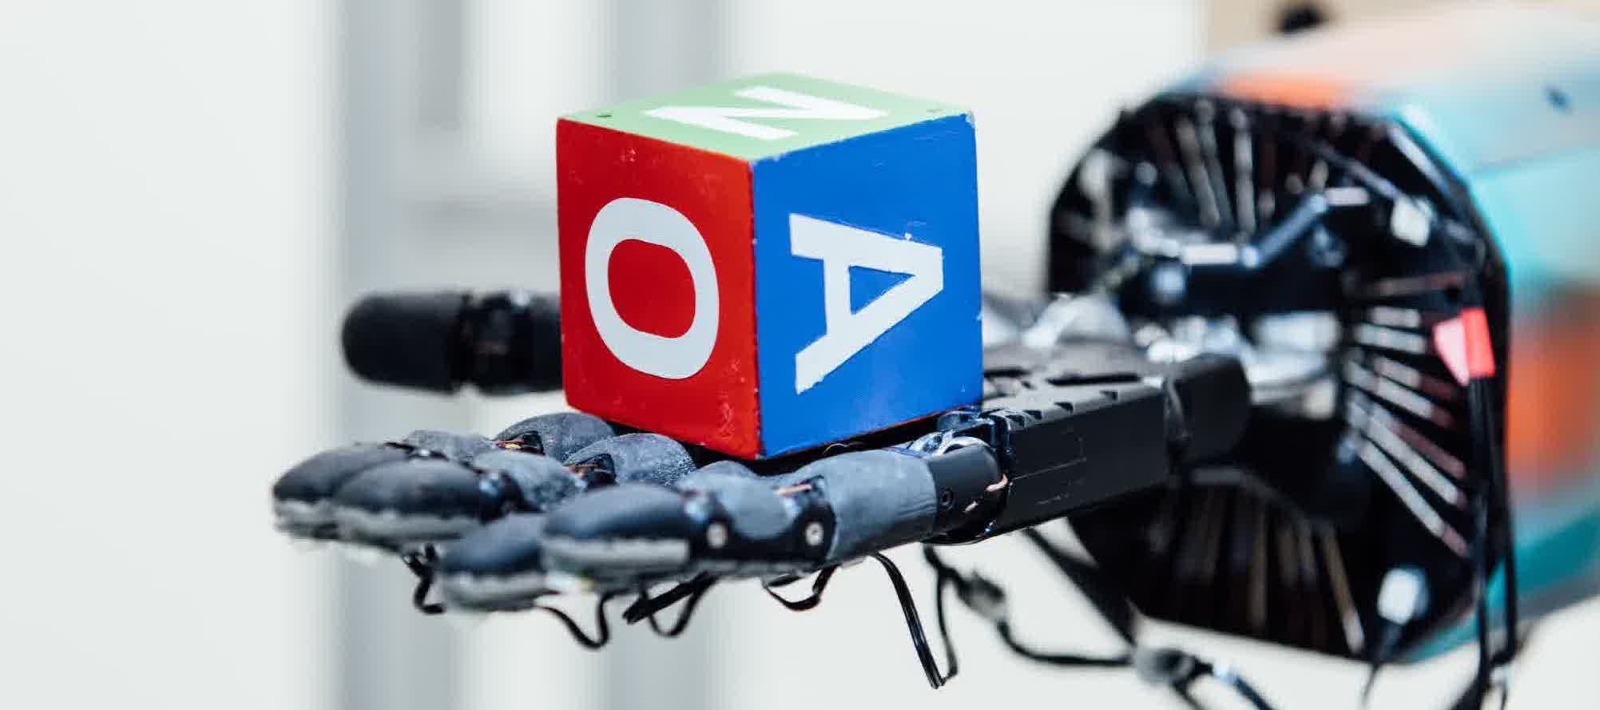 La main robotisée conçue par l'organisation à but non lucratif OpenAI est capable d'apprendre toute seule à&nbsp;manipuler un objet grâce à une intelligence artificielle qui réalise des simulations à partir de légères modifications de couleurs, de poids ou de taille, sur l'objet en question. © OpenAI